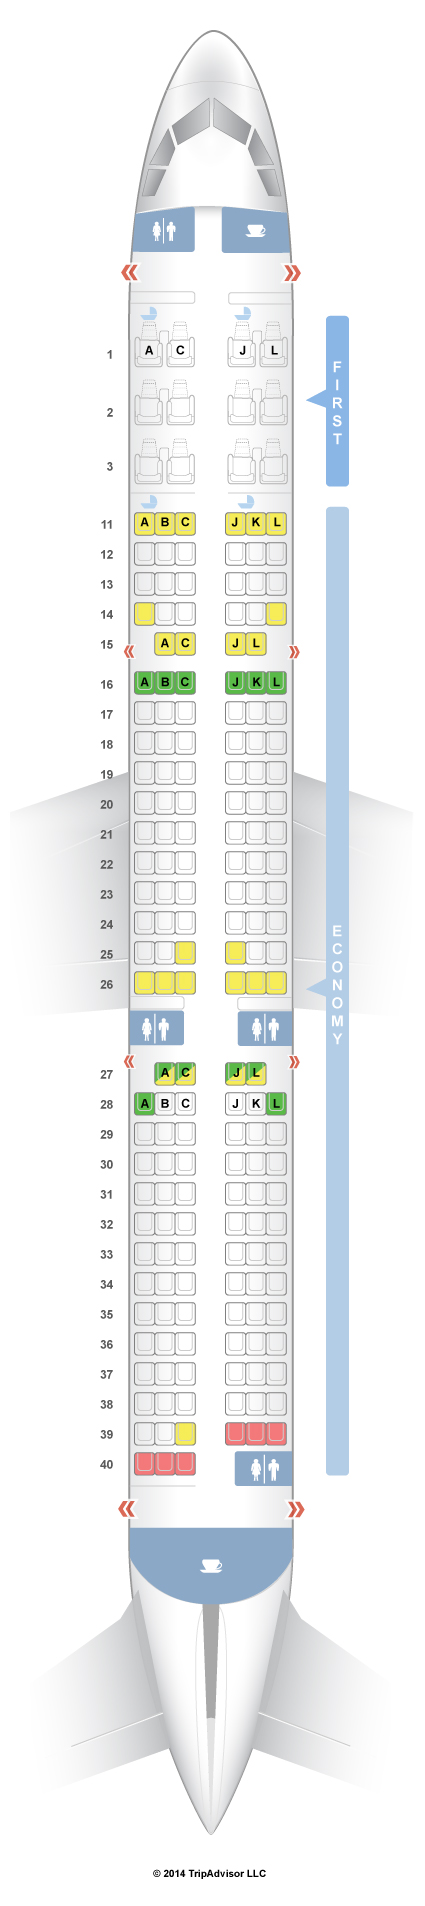 Air China Seating Chart